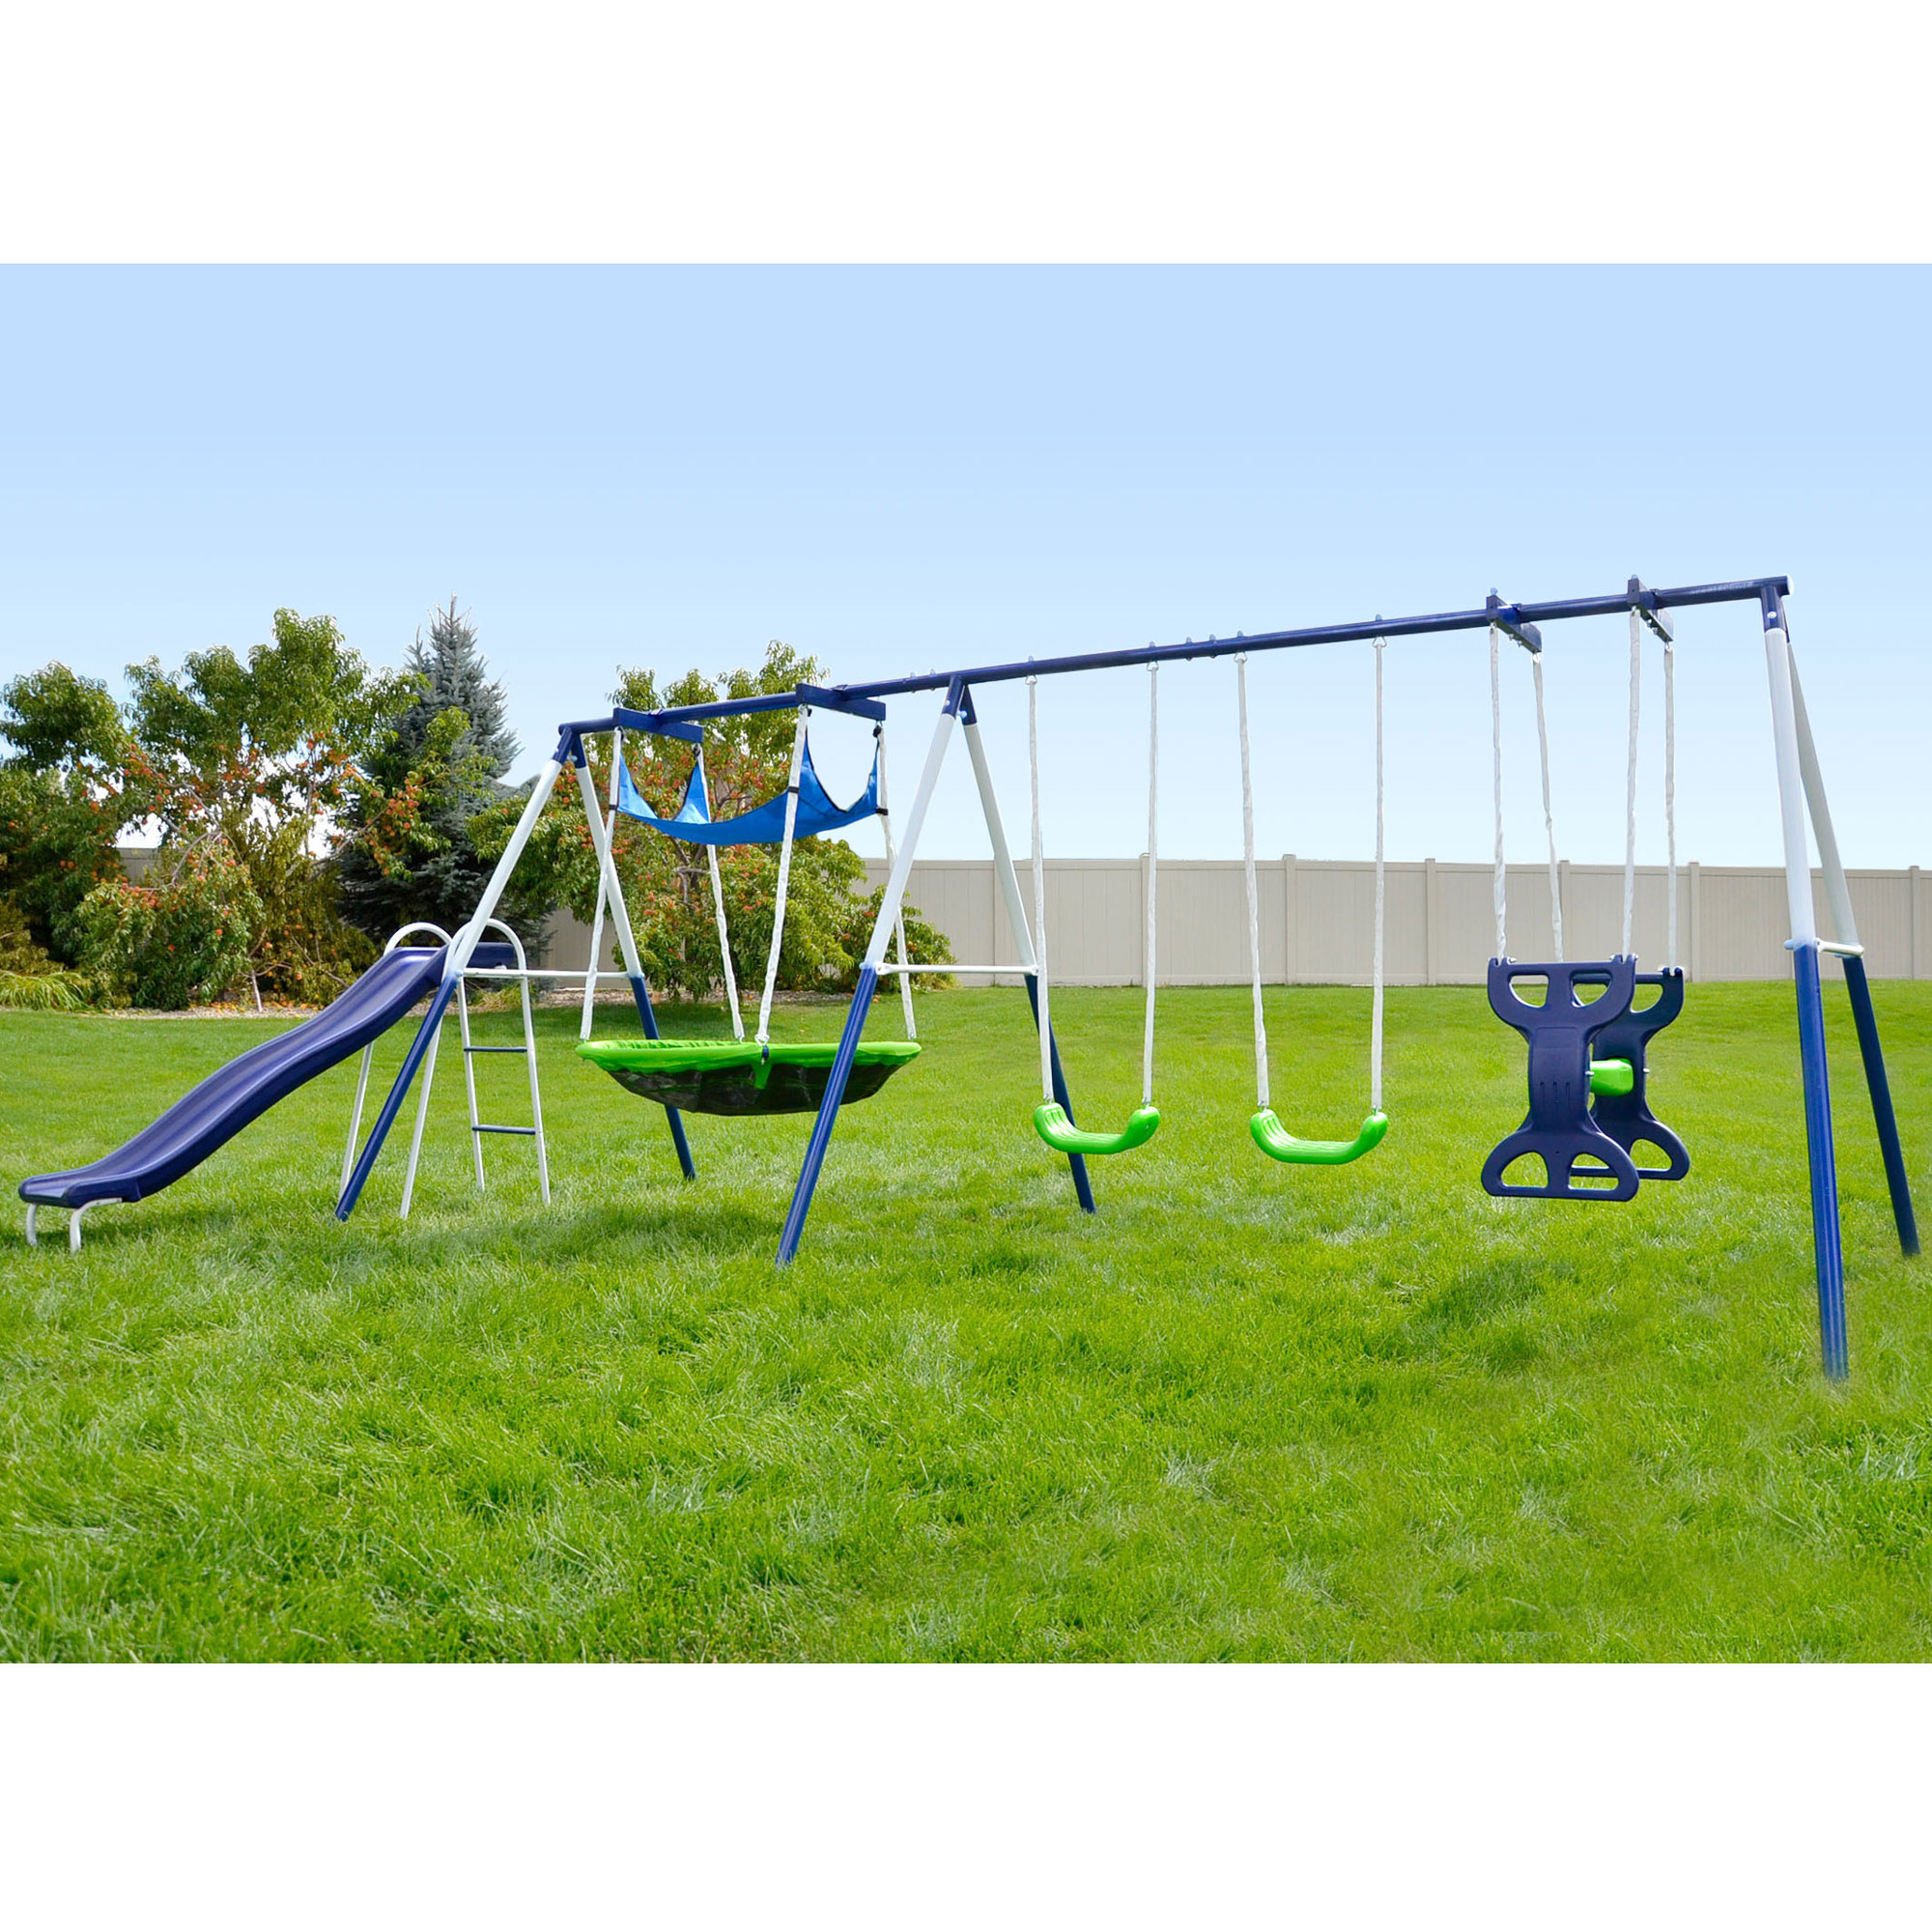 Backyard Swing Sets Metal Child Safe Swing Set Toddler Playground